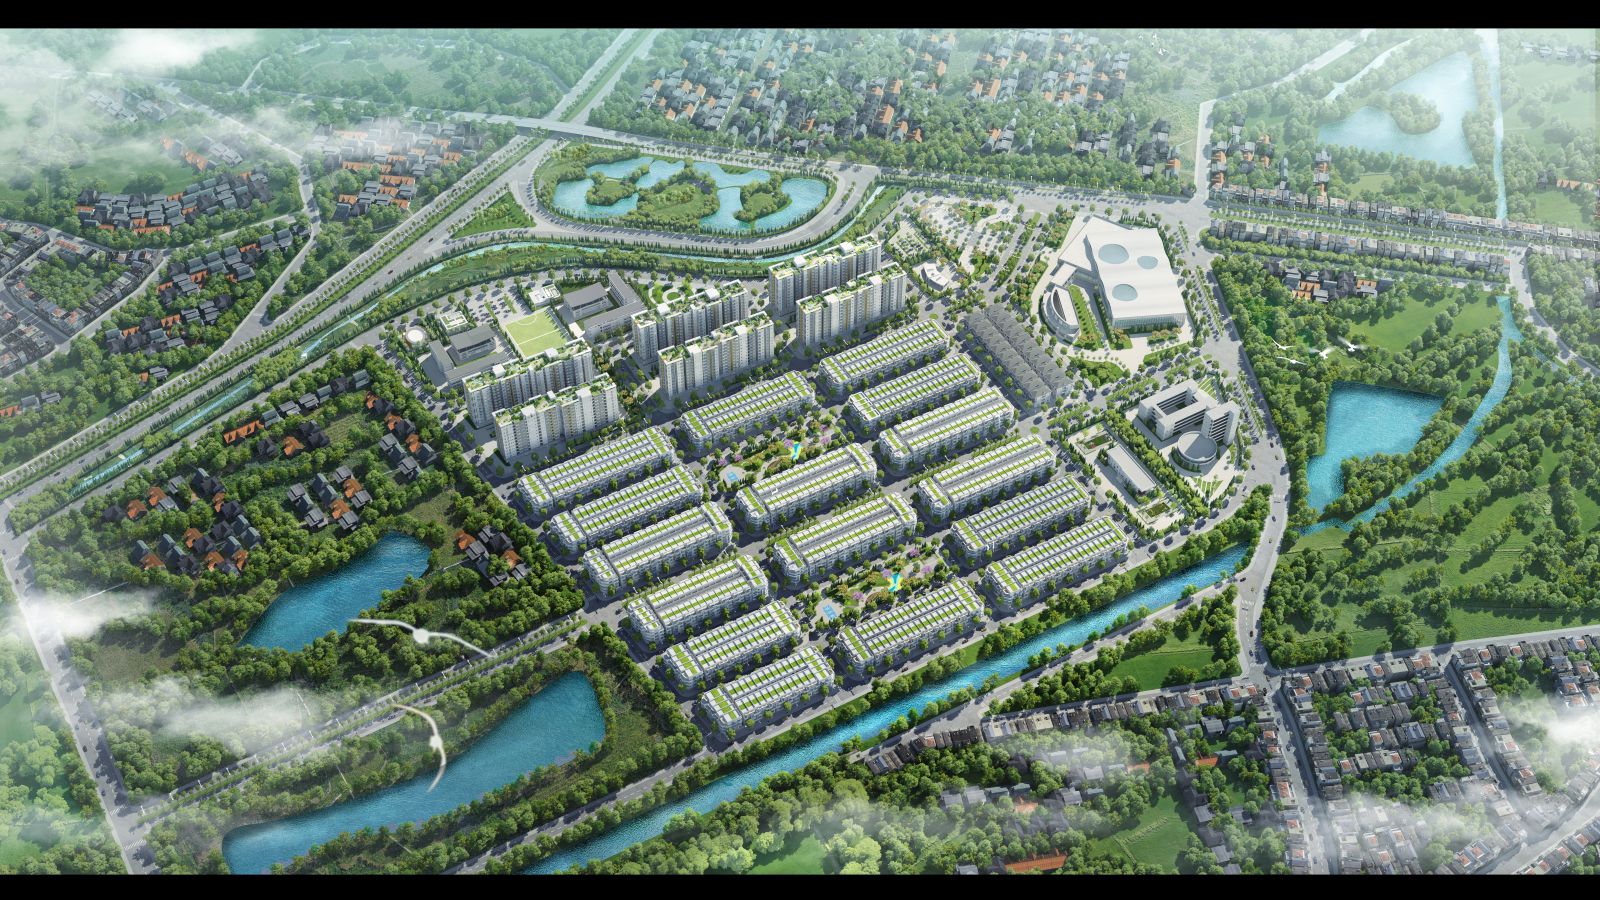 Him Lam Green Park là khu đô thị hoàn chỉnh đầu tiên tại Bắc Ninh